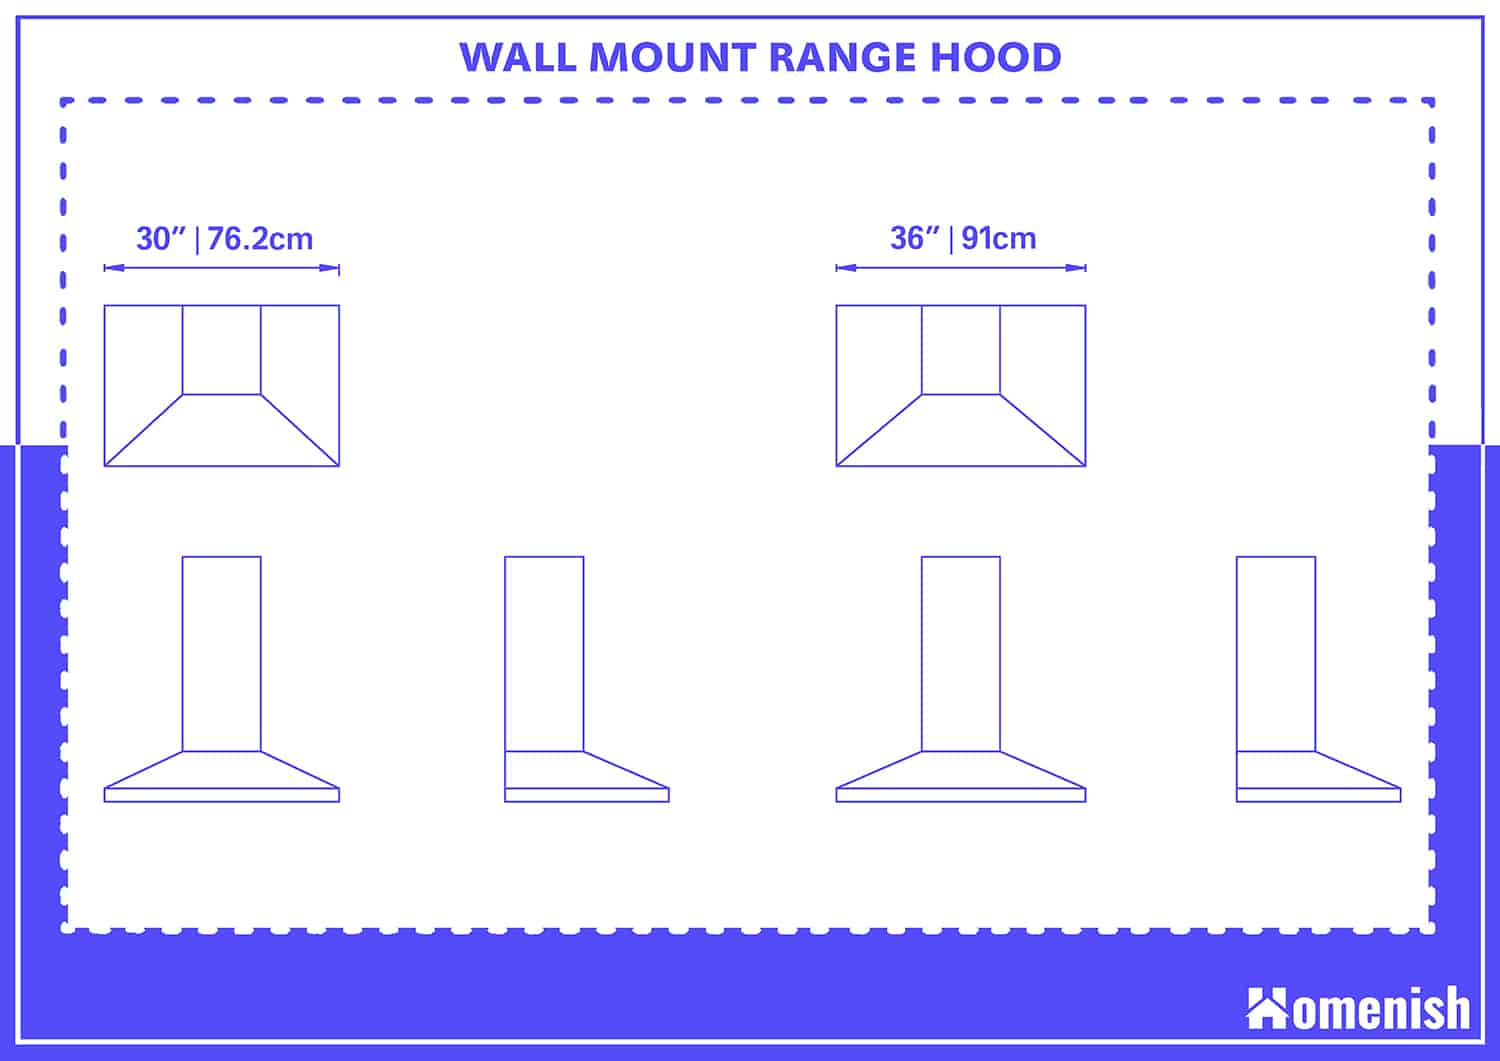 Wall Mount Range Hood